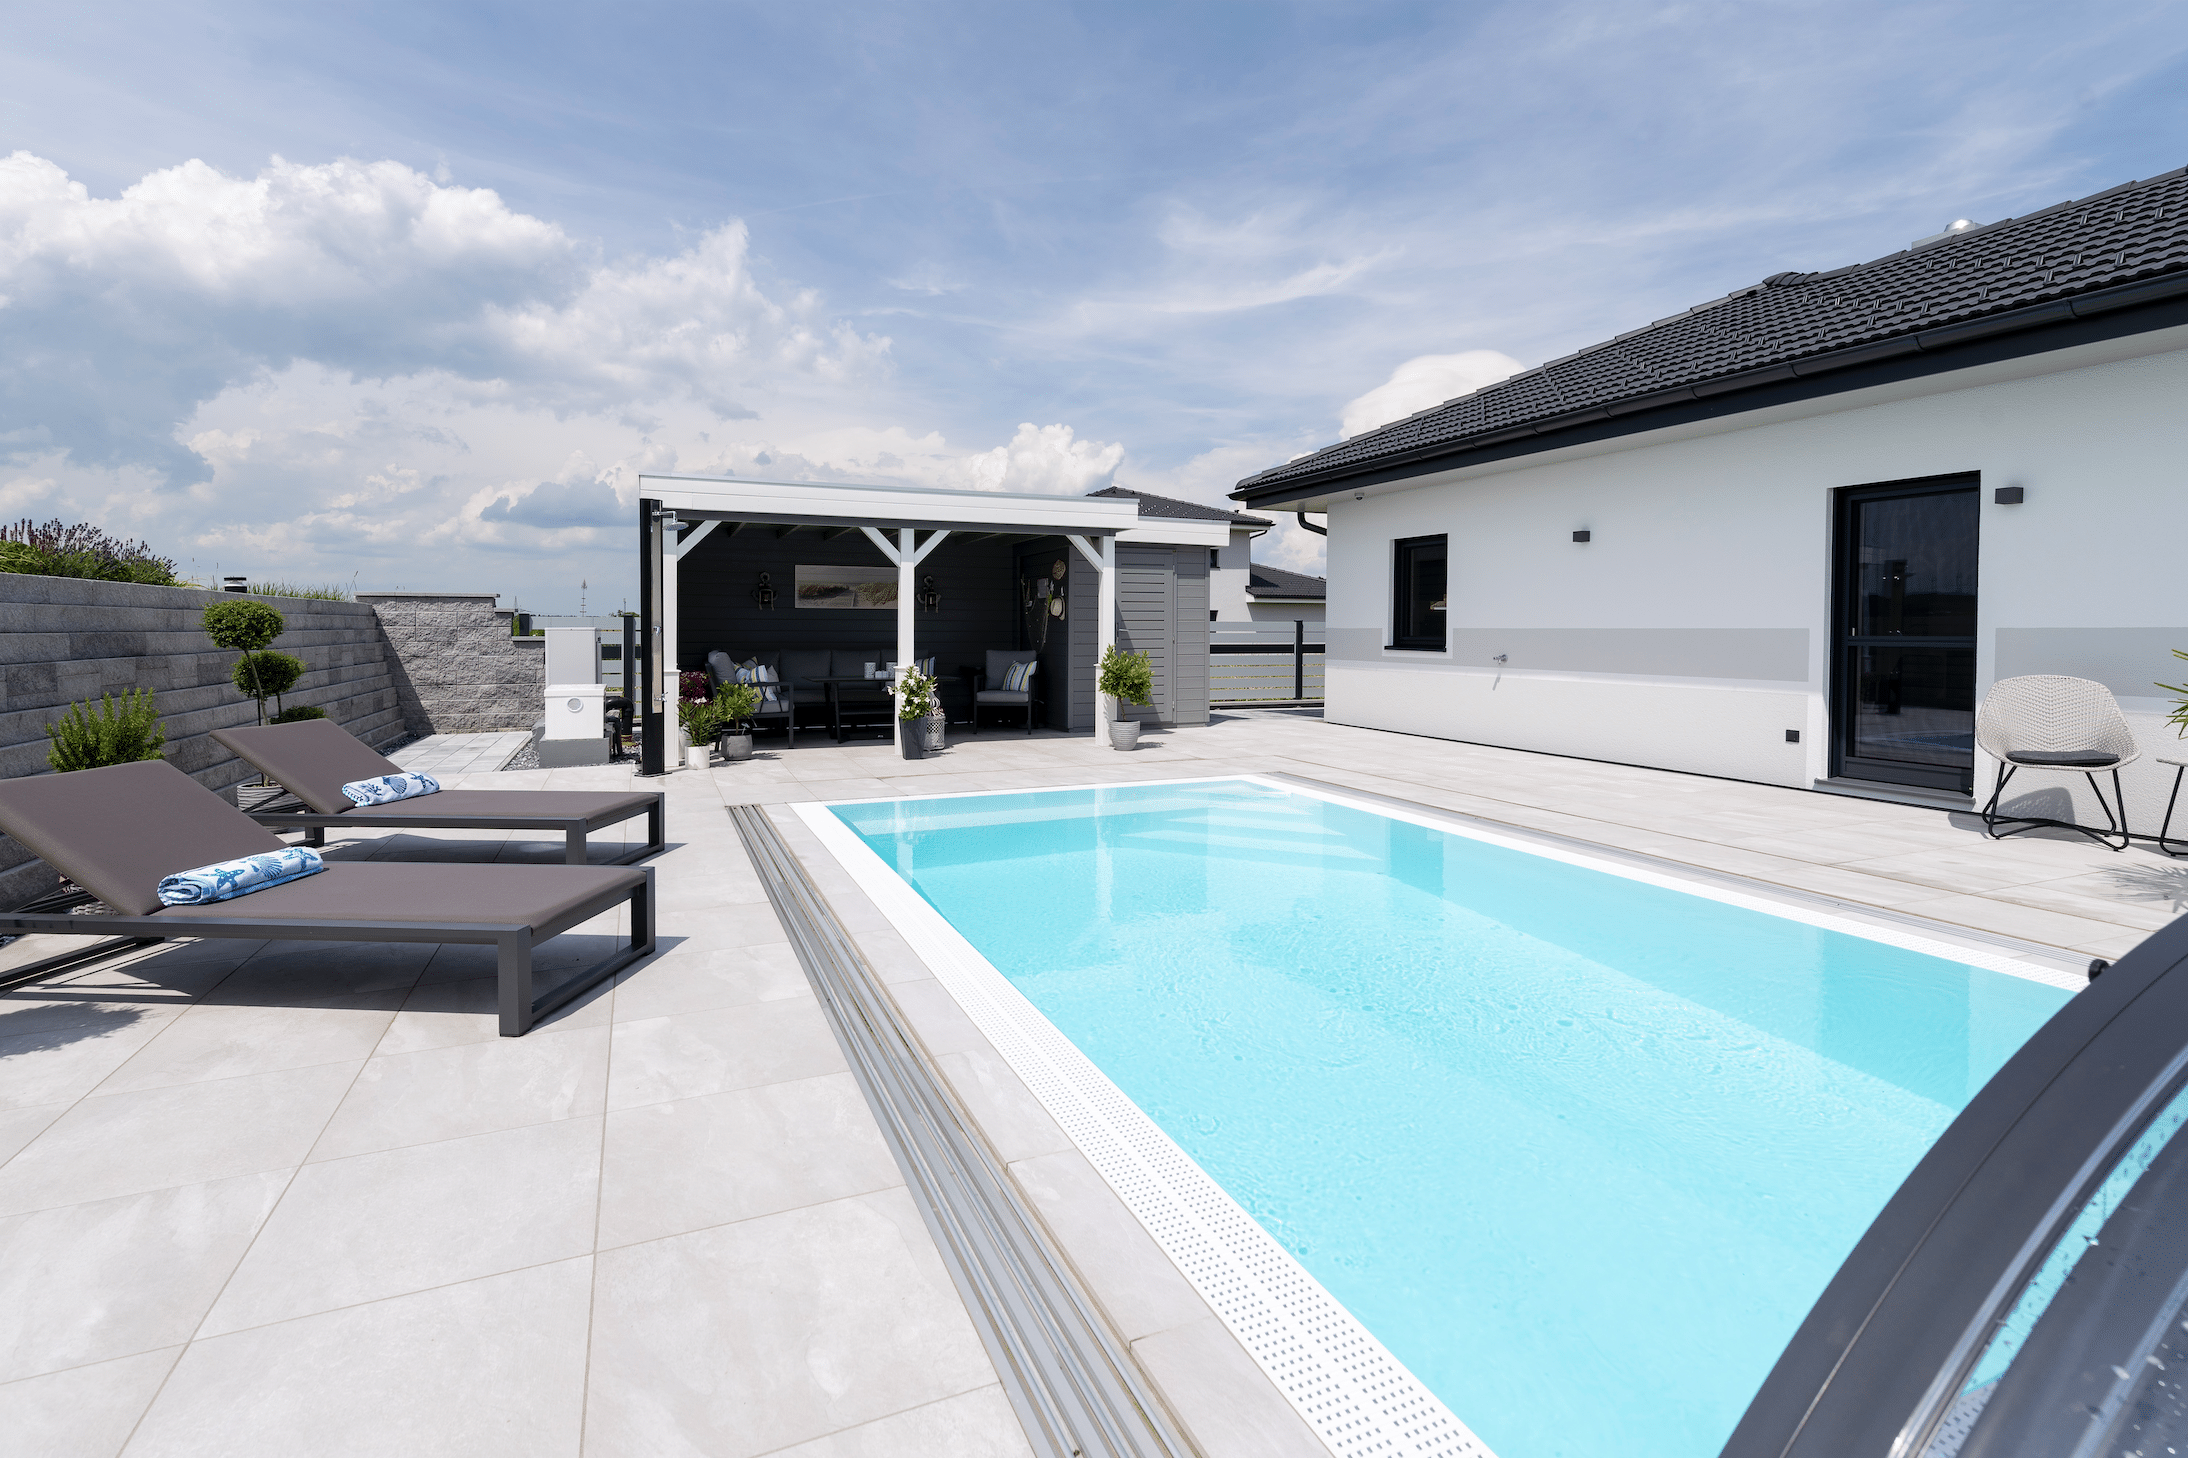 Hartl Haus zeigt eine Terrasse mit großen hellgrauen Fliesen, einen rechteckigen Pool mit türkisem Wasser, Liegestühle und einer überdachten Lounge.